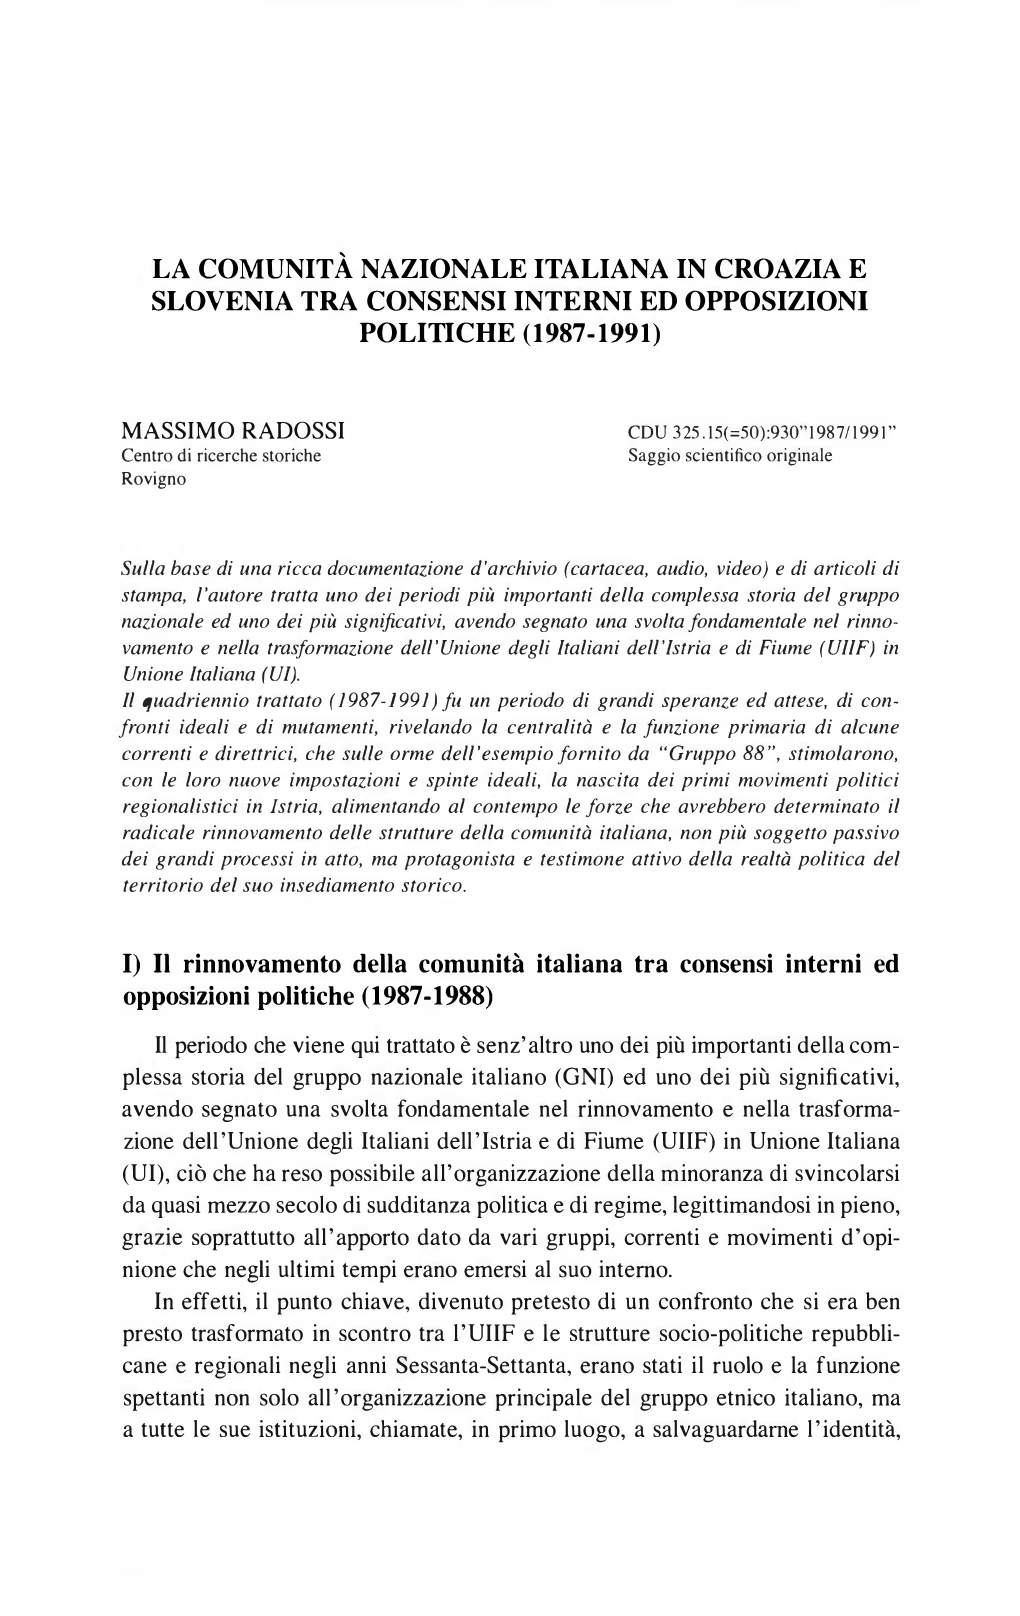 La Comunità Nazionale Italiana in Croazia E Slovenia Tra Consensi Interni Ed Opposizioni Politiche (1987-1991)